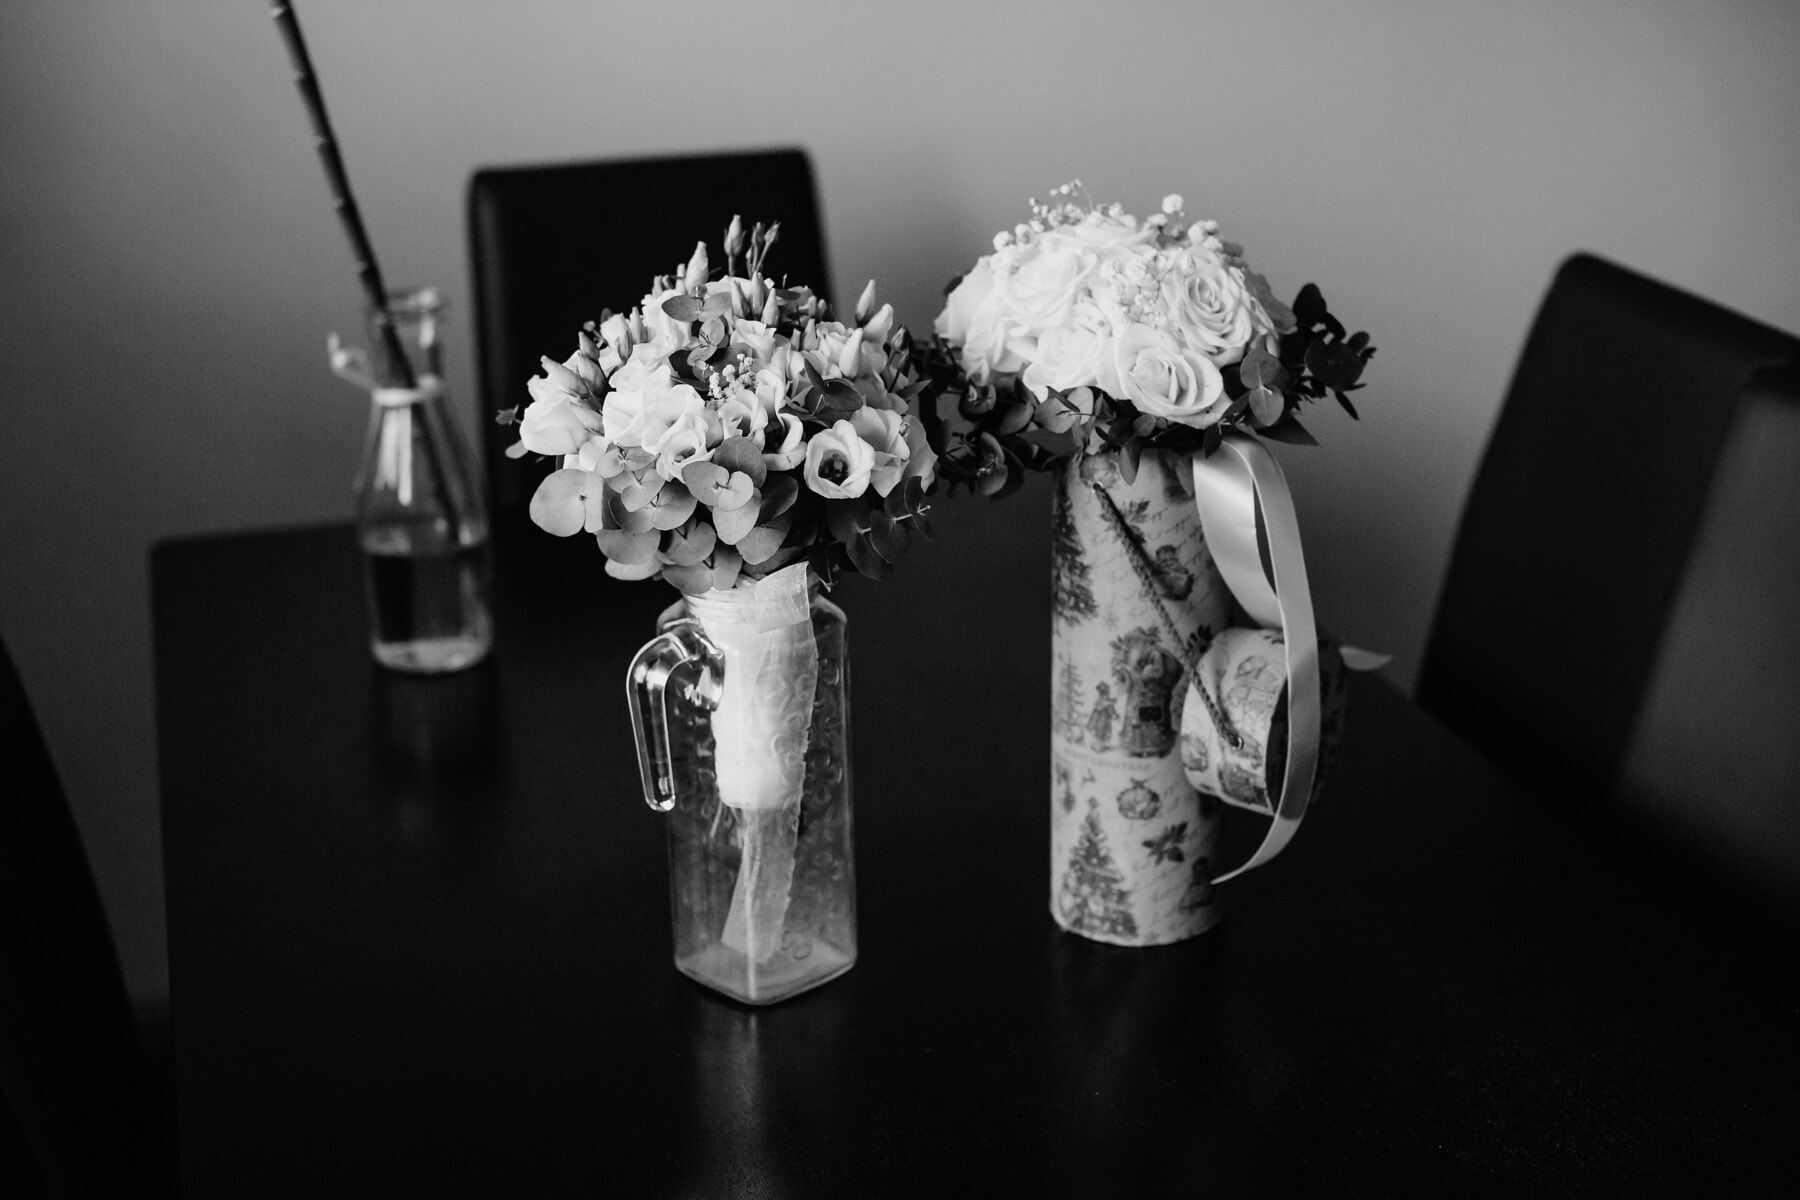 džbán, dvojice, váza, kytice, elegantní, růže, kancelář, černá a bílá, černobílý tisk, zátiší